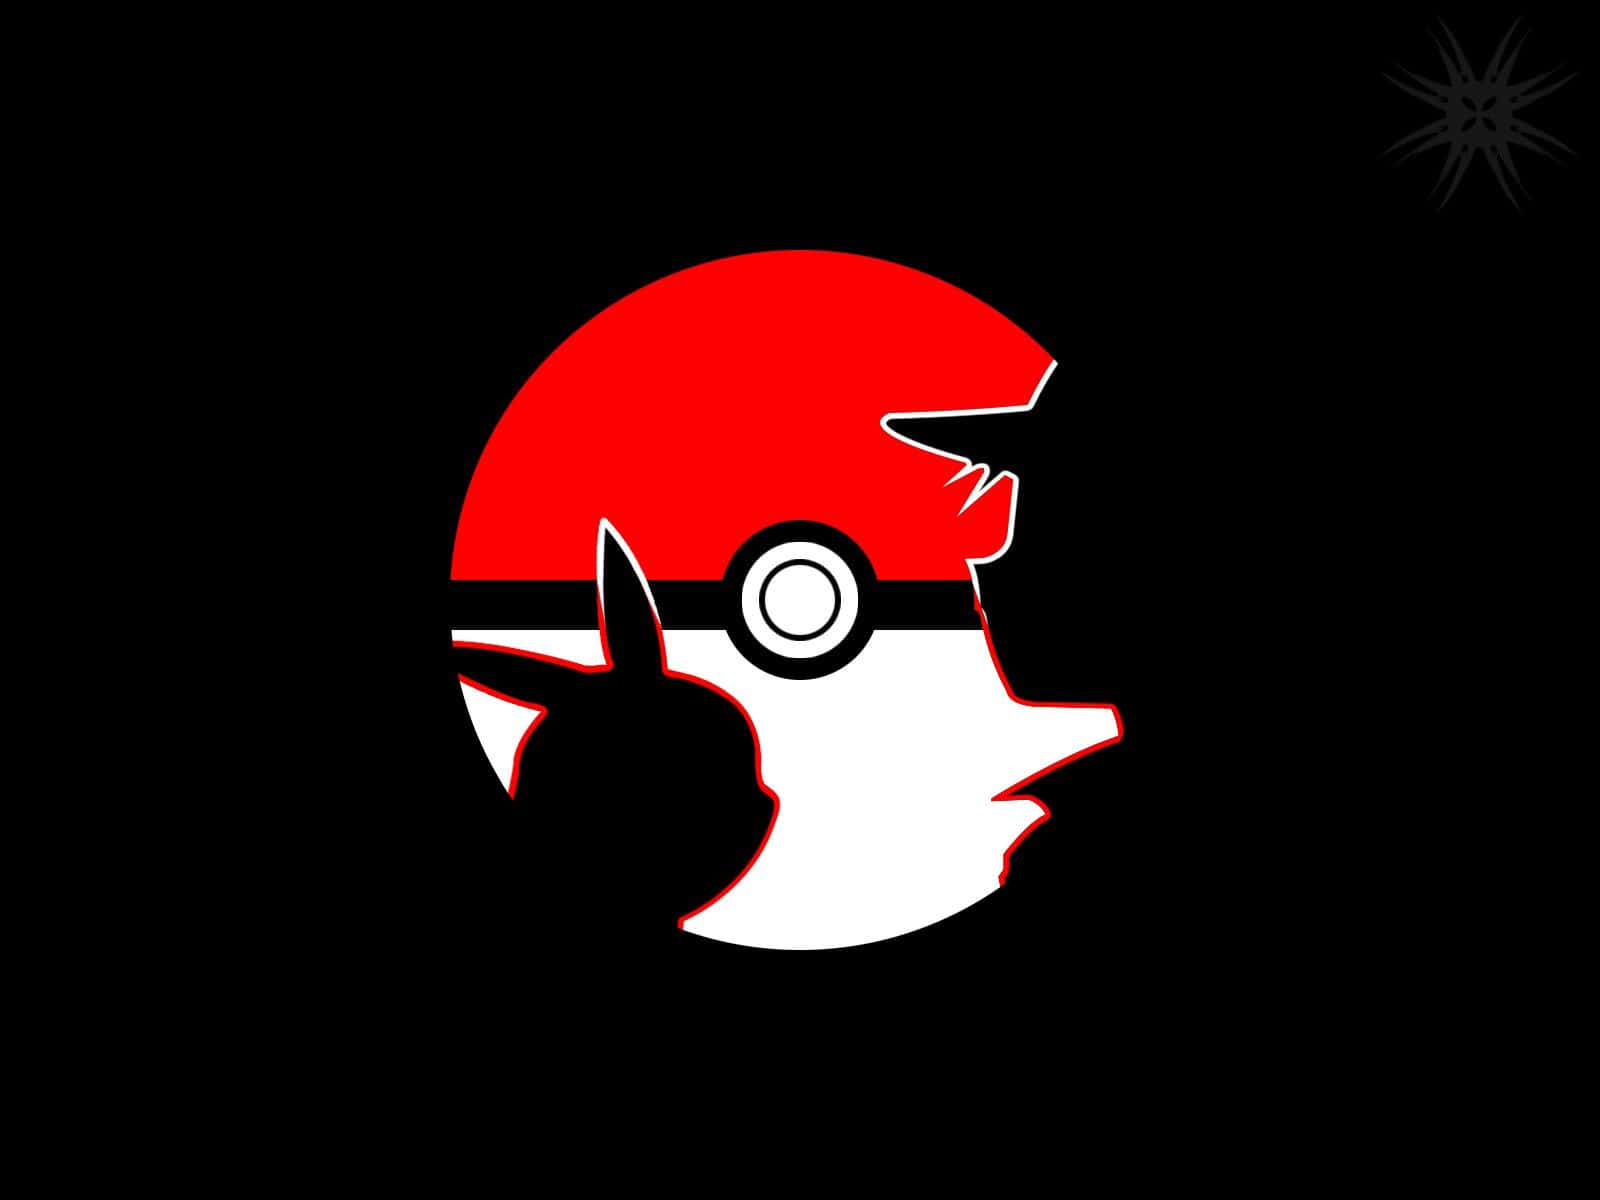 Pokémonpapéis De Parede Papéis De Parede Hd Pokémon Papéis De Parede Papel de Parede